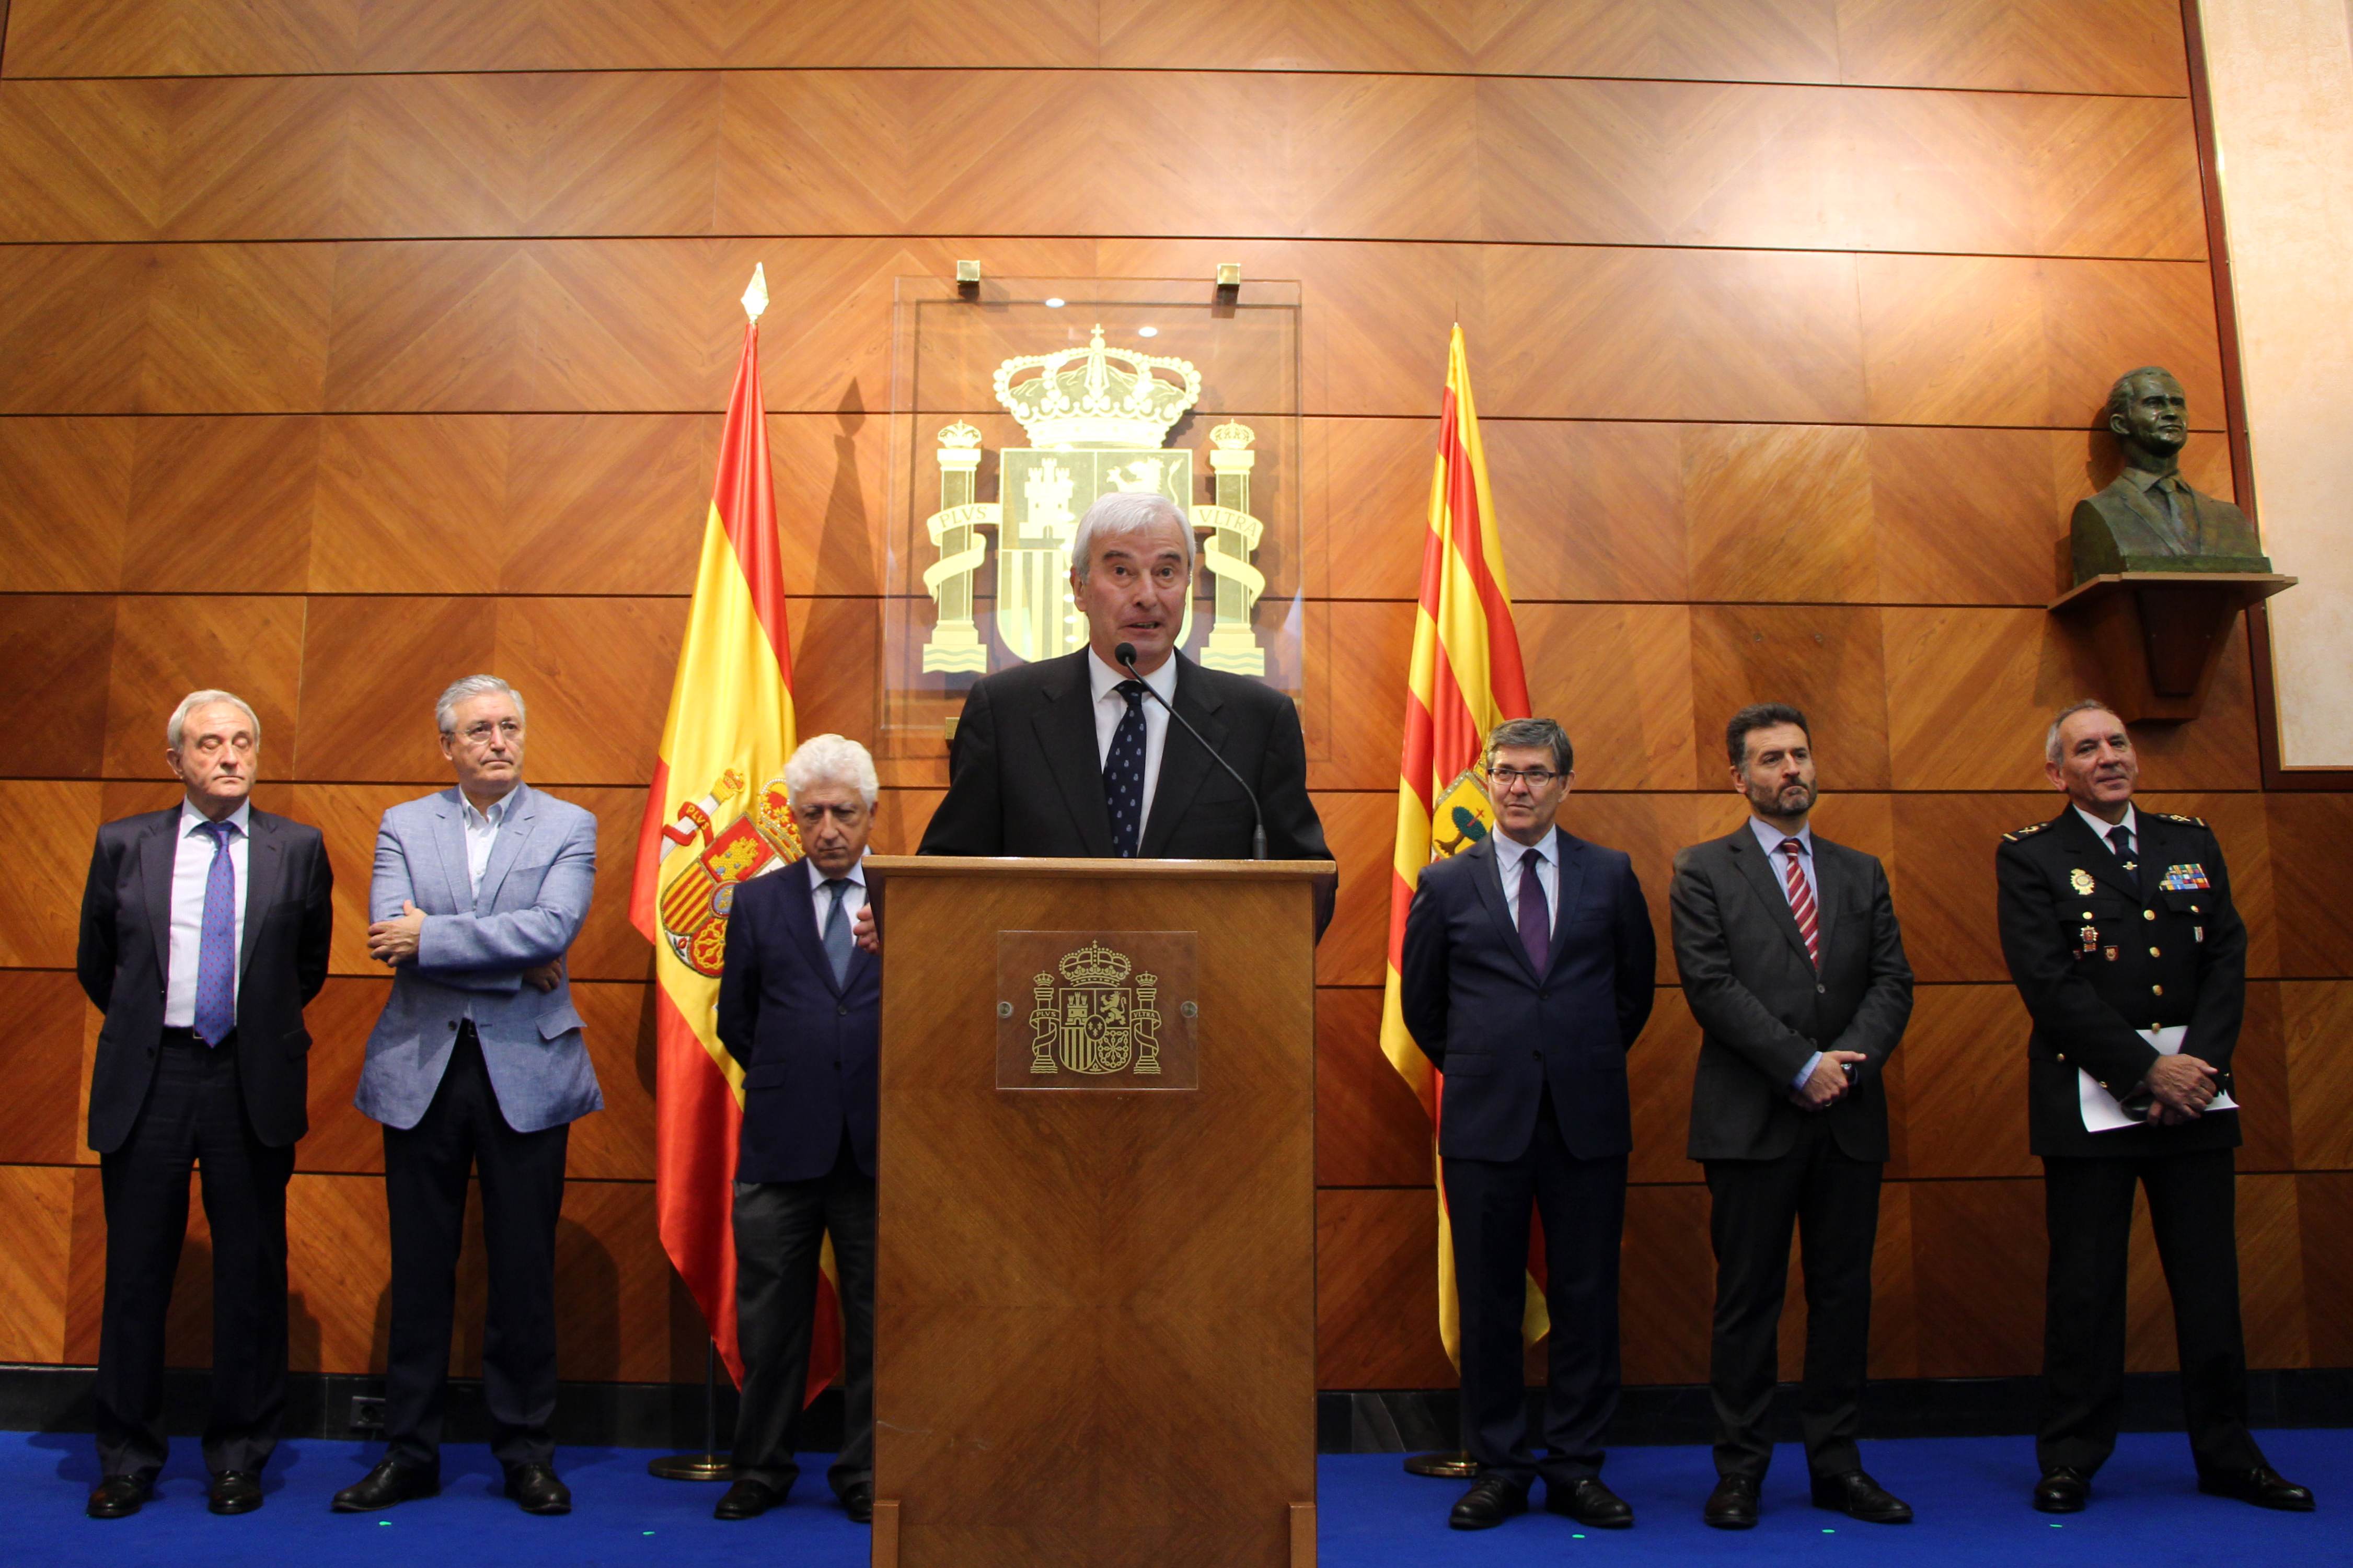 José Ángel González se presenta como nuevo jefe superior de Policía de Aragón